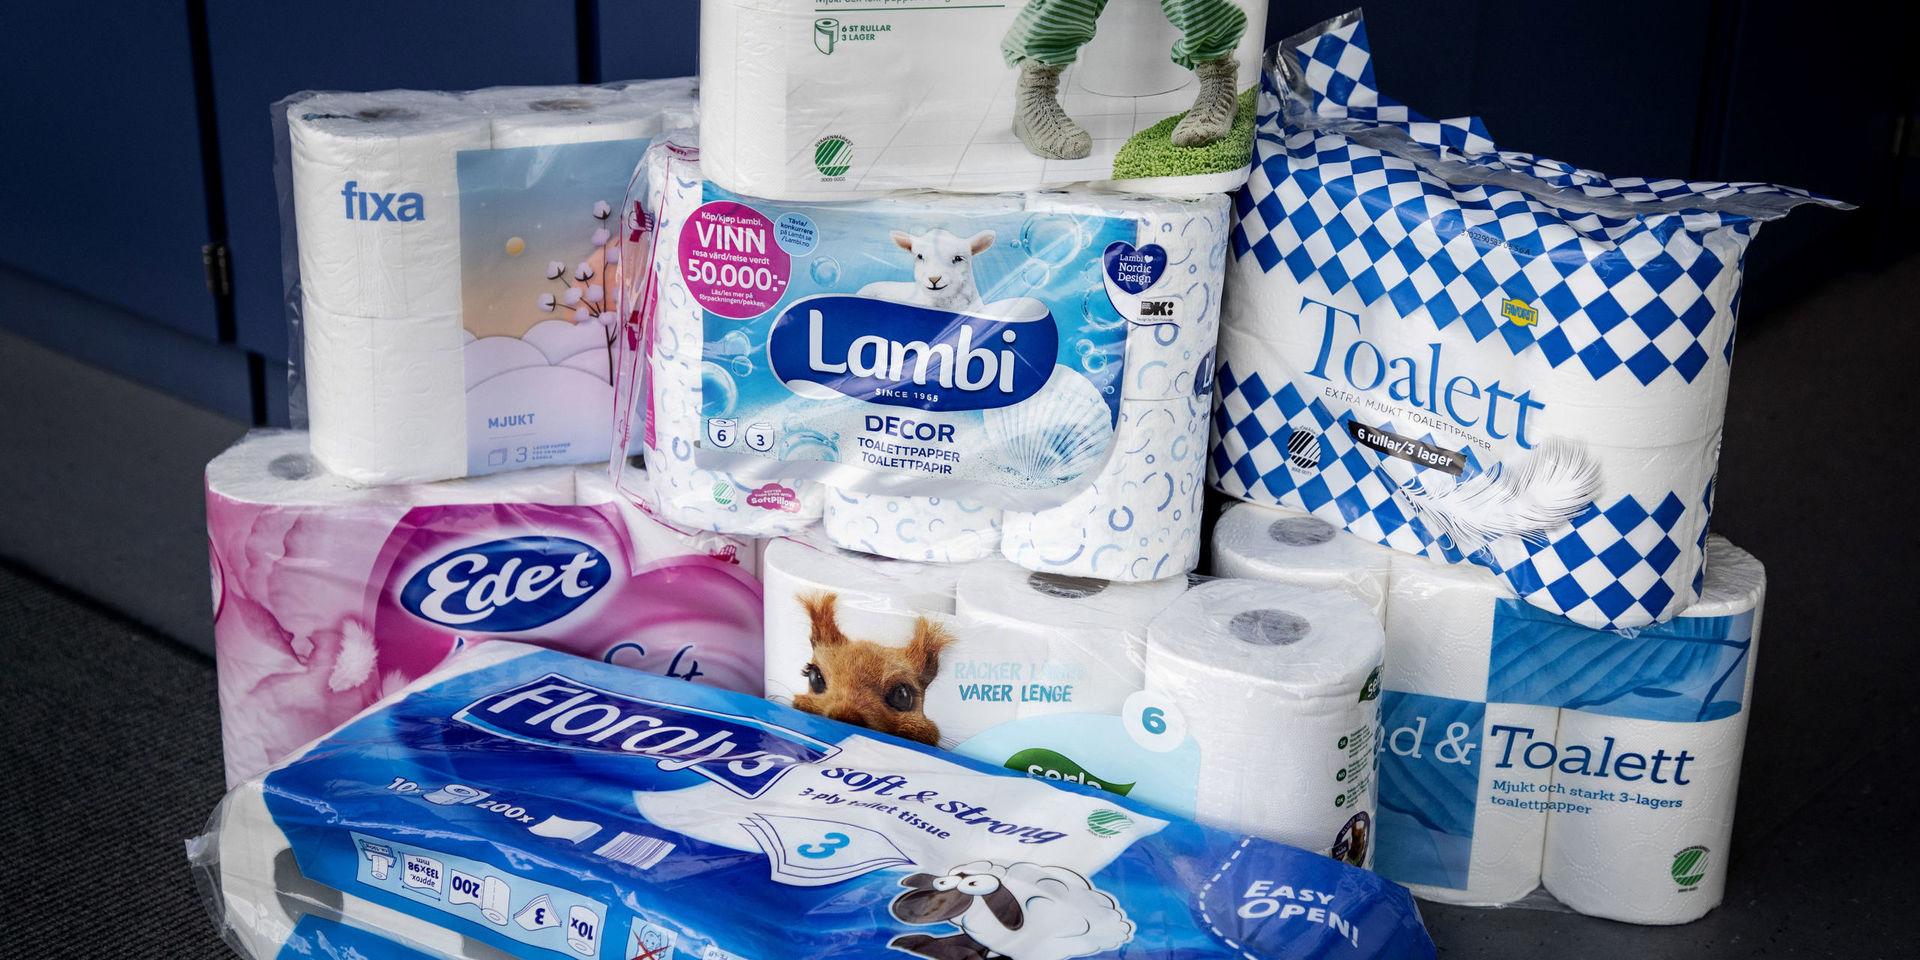 Vi har många duktiga tillverkare av toalettpapper i Sverige, skriver insändarskribenten.